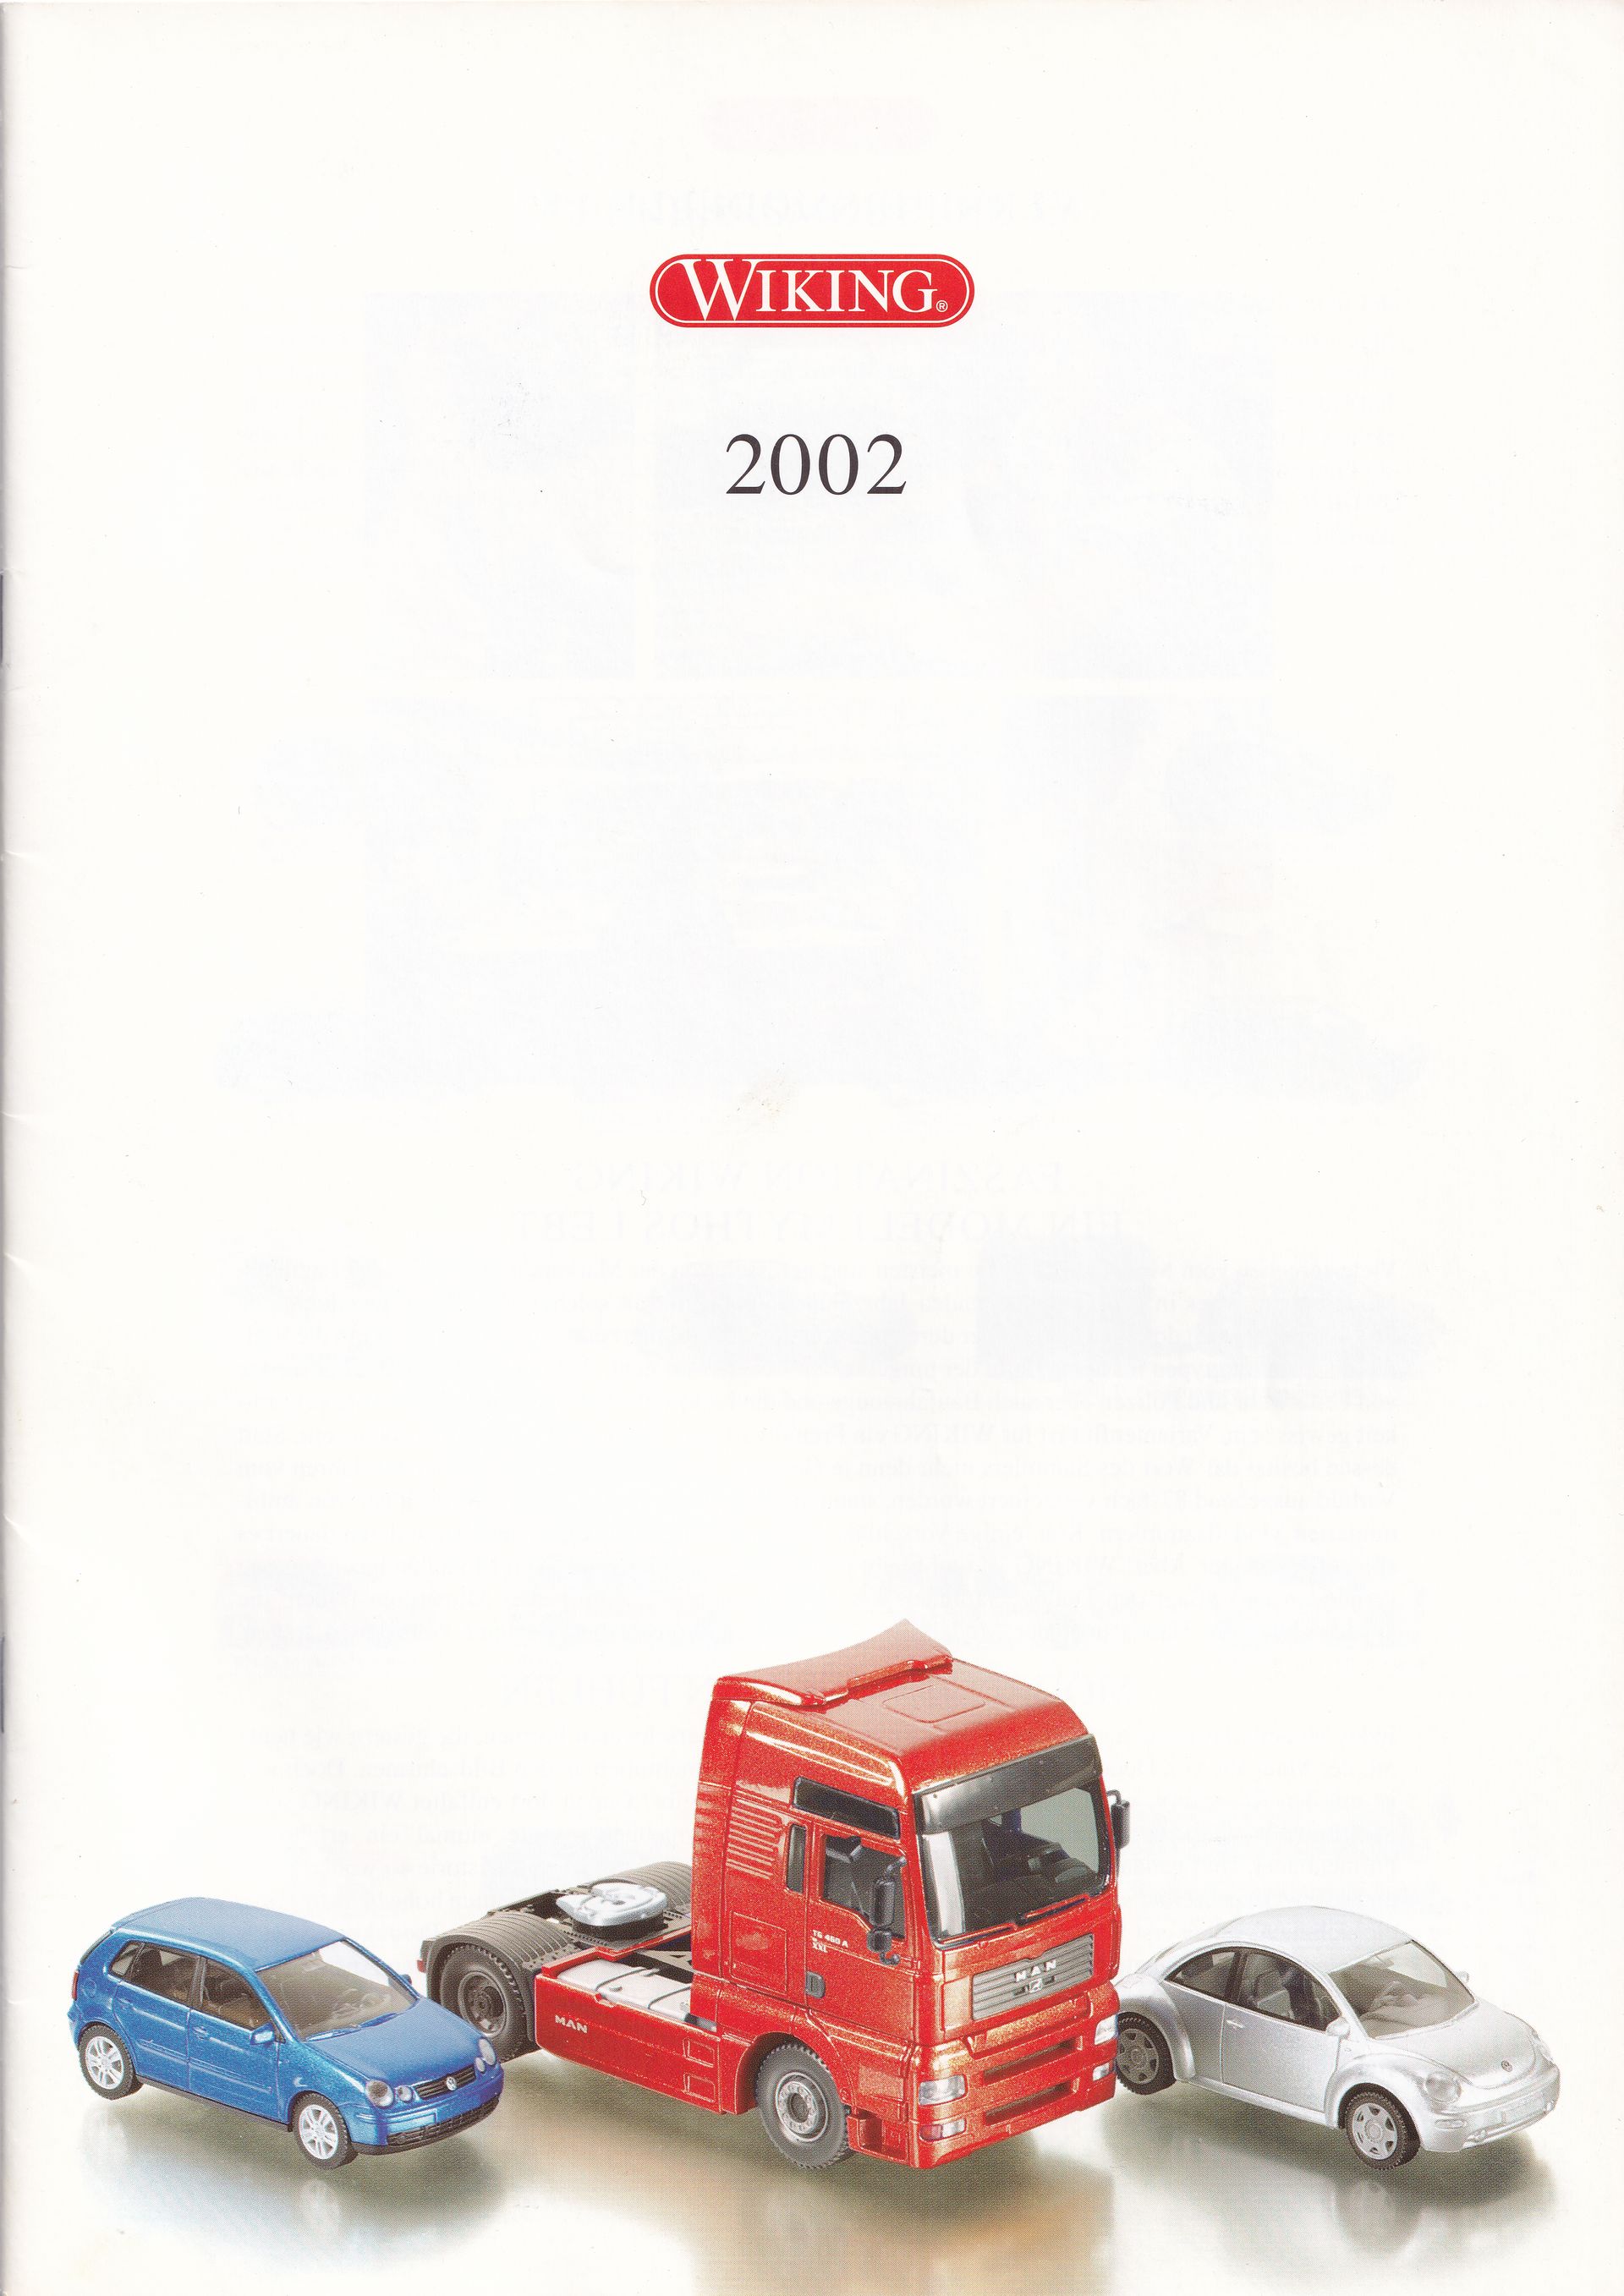 Wiking Catalogue 2002